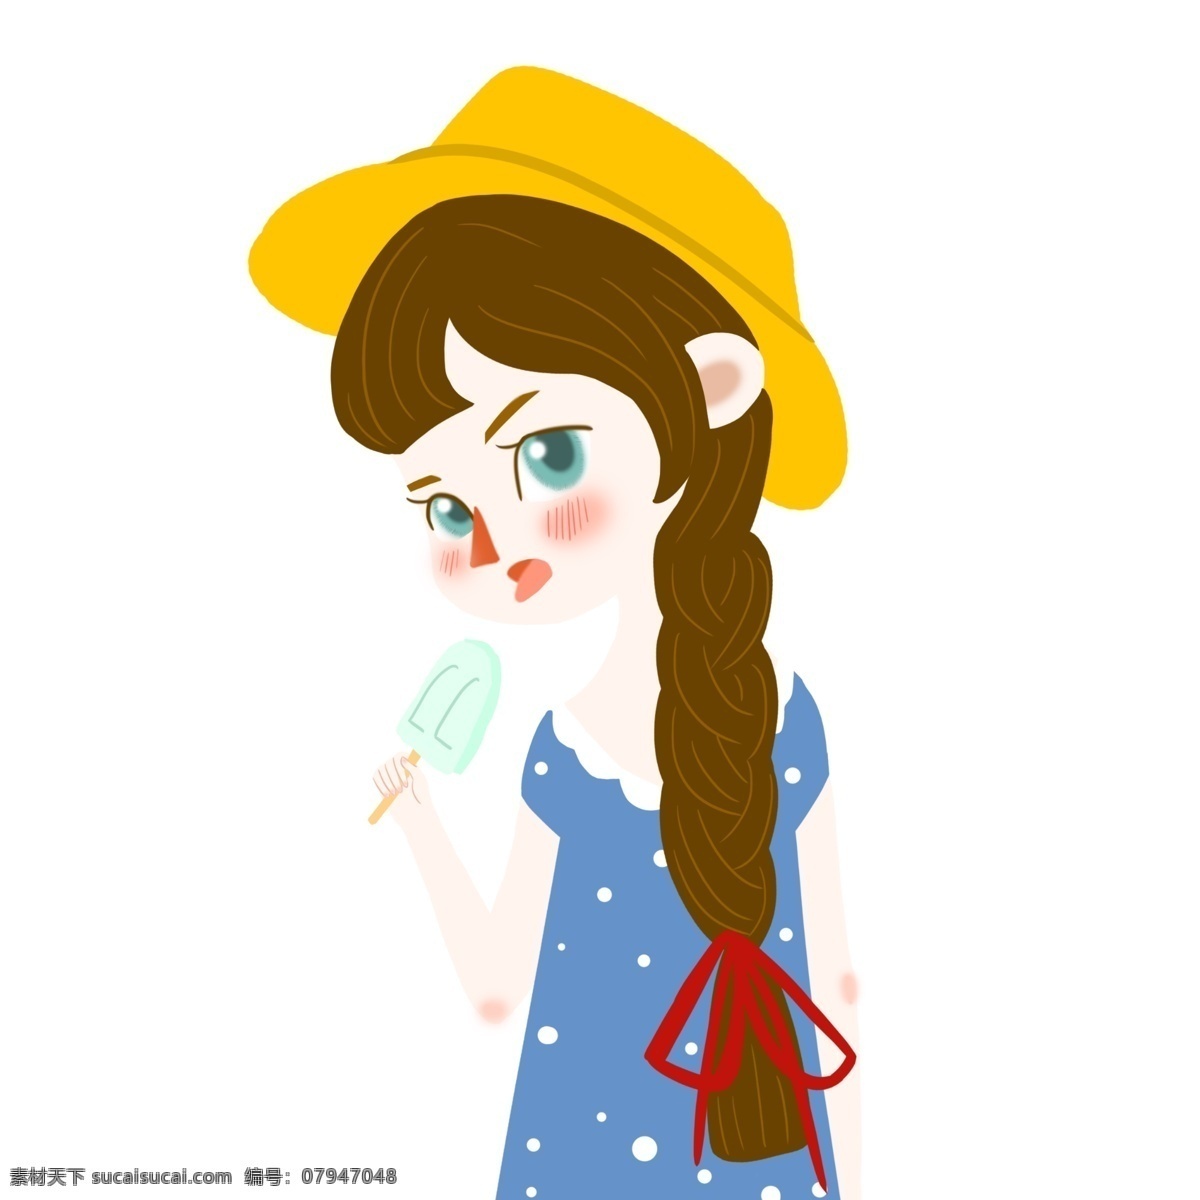 夏季 女孩 吃 雪糕 女孩吃雪糕 草帽 麻花辫 红色头绳 连衣裙